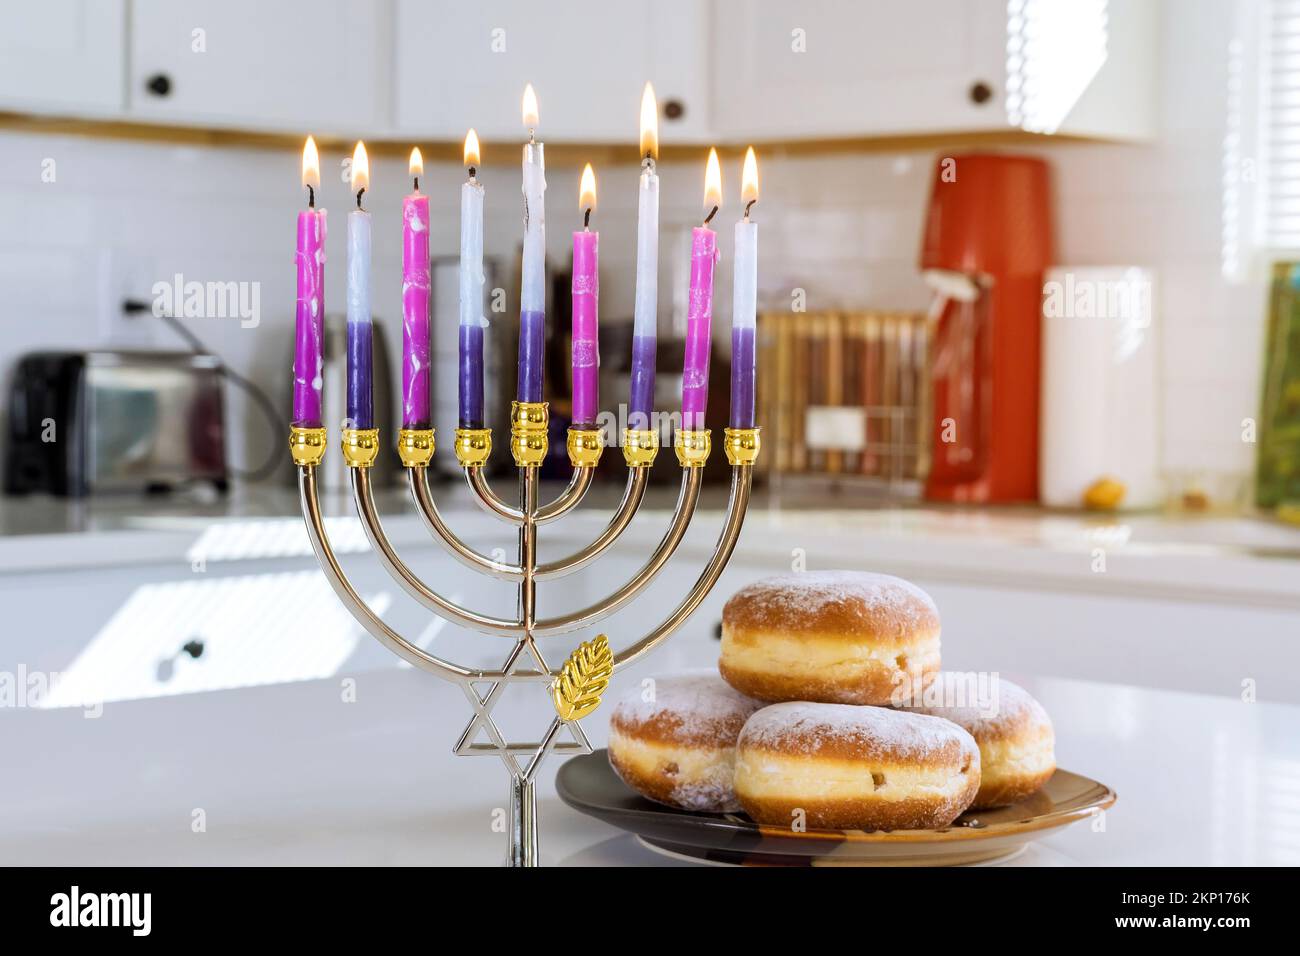 Judaïsme tradition famille religieux symboles de vacances éclairant les bougies de la manoukkiah menorah pendant la célébration de Hanoukkah Banque D'Images